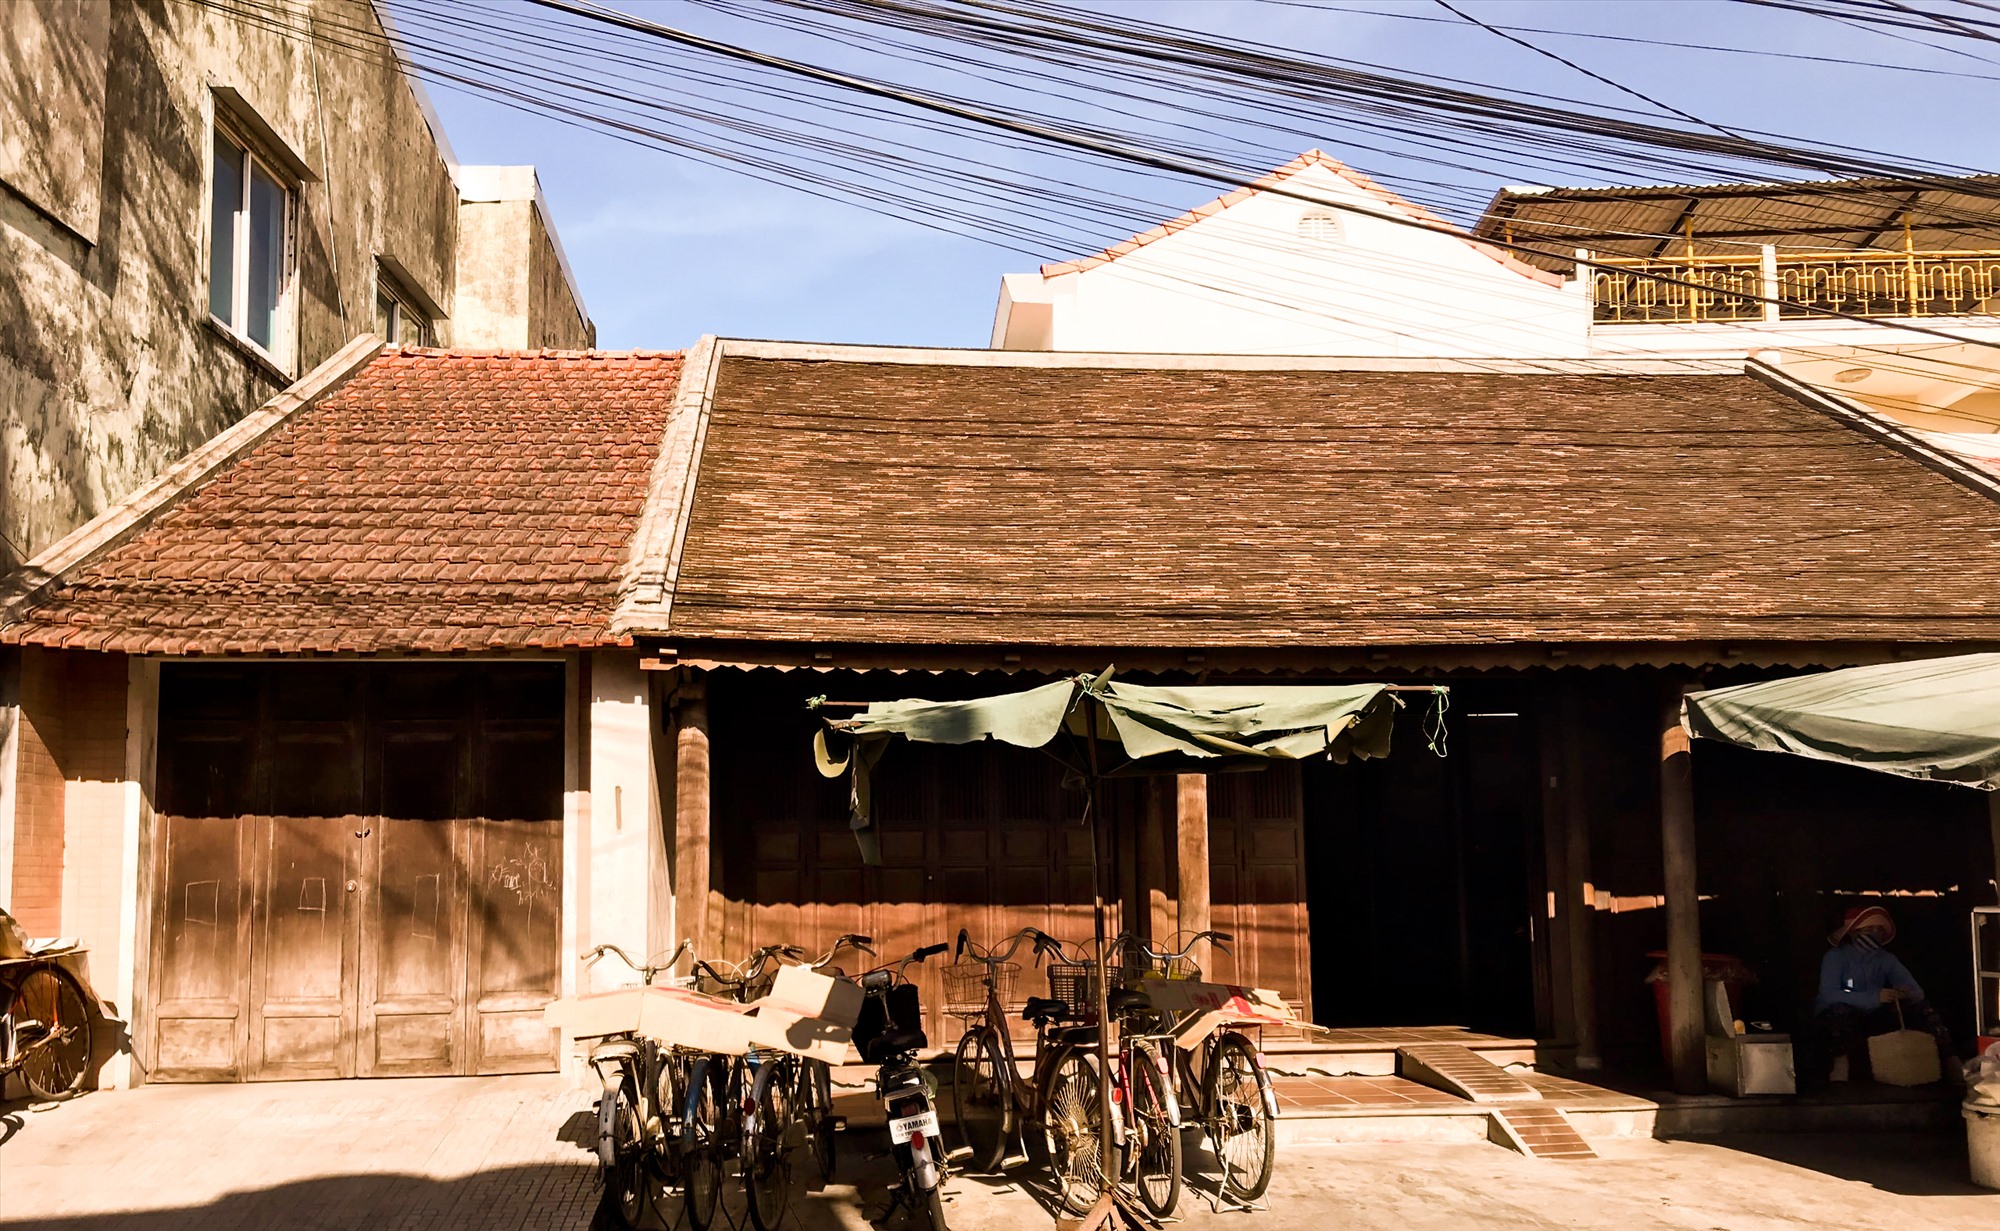 Sau gần 200 năm, ngôi nhà vẫn trường tồn với thời gian trong khu phố cổ Bao Vinh .